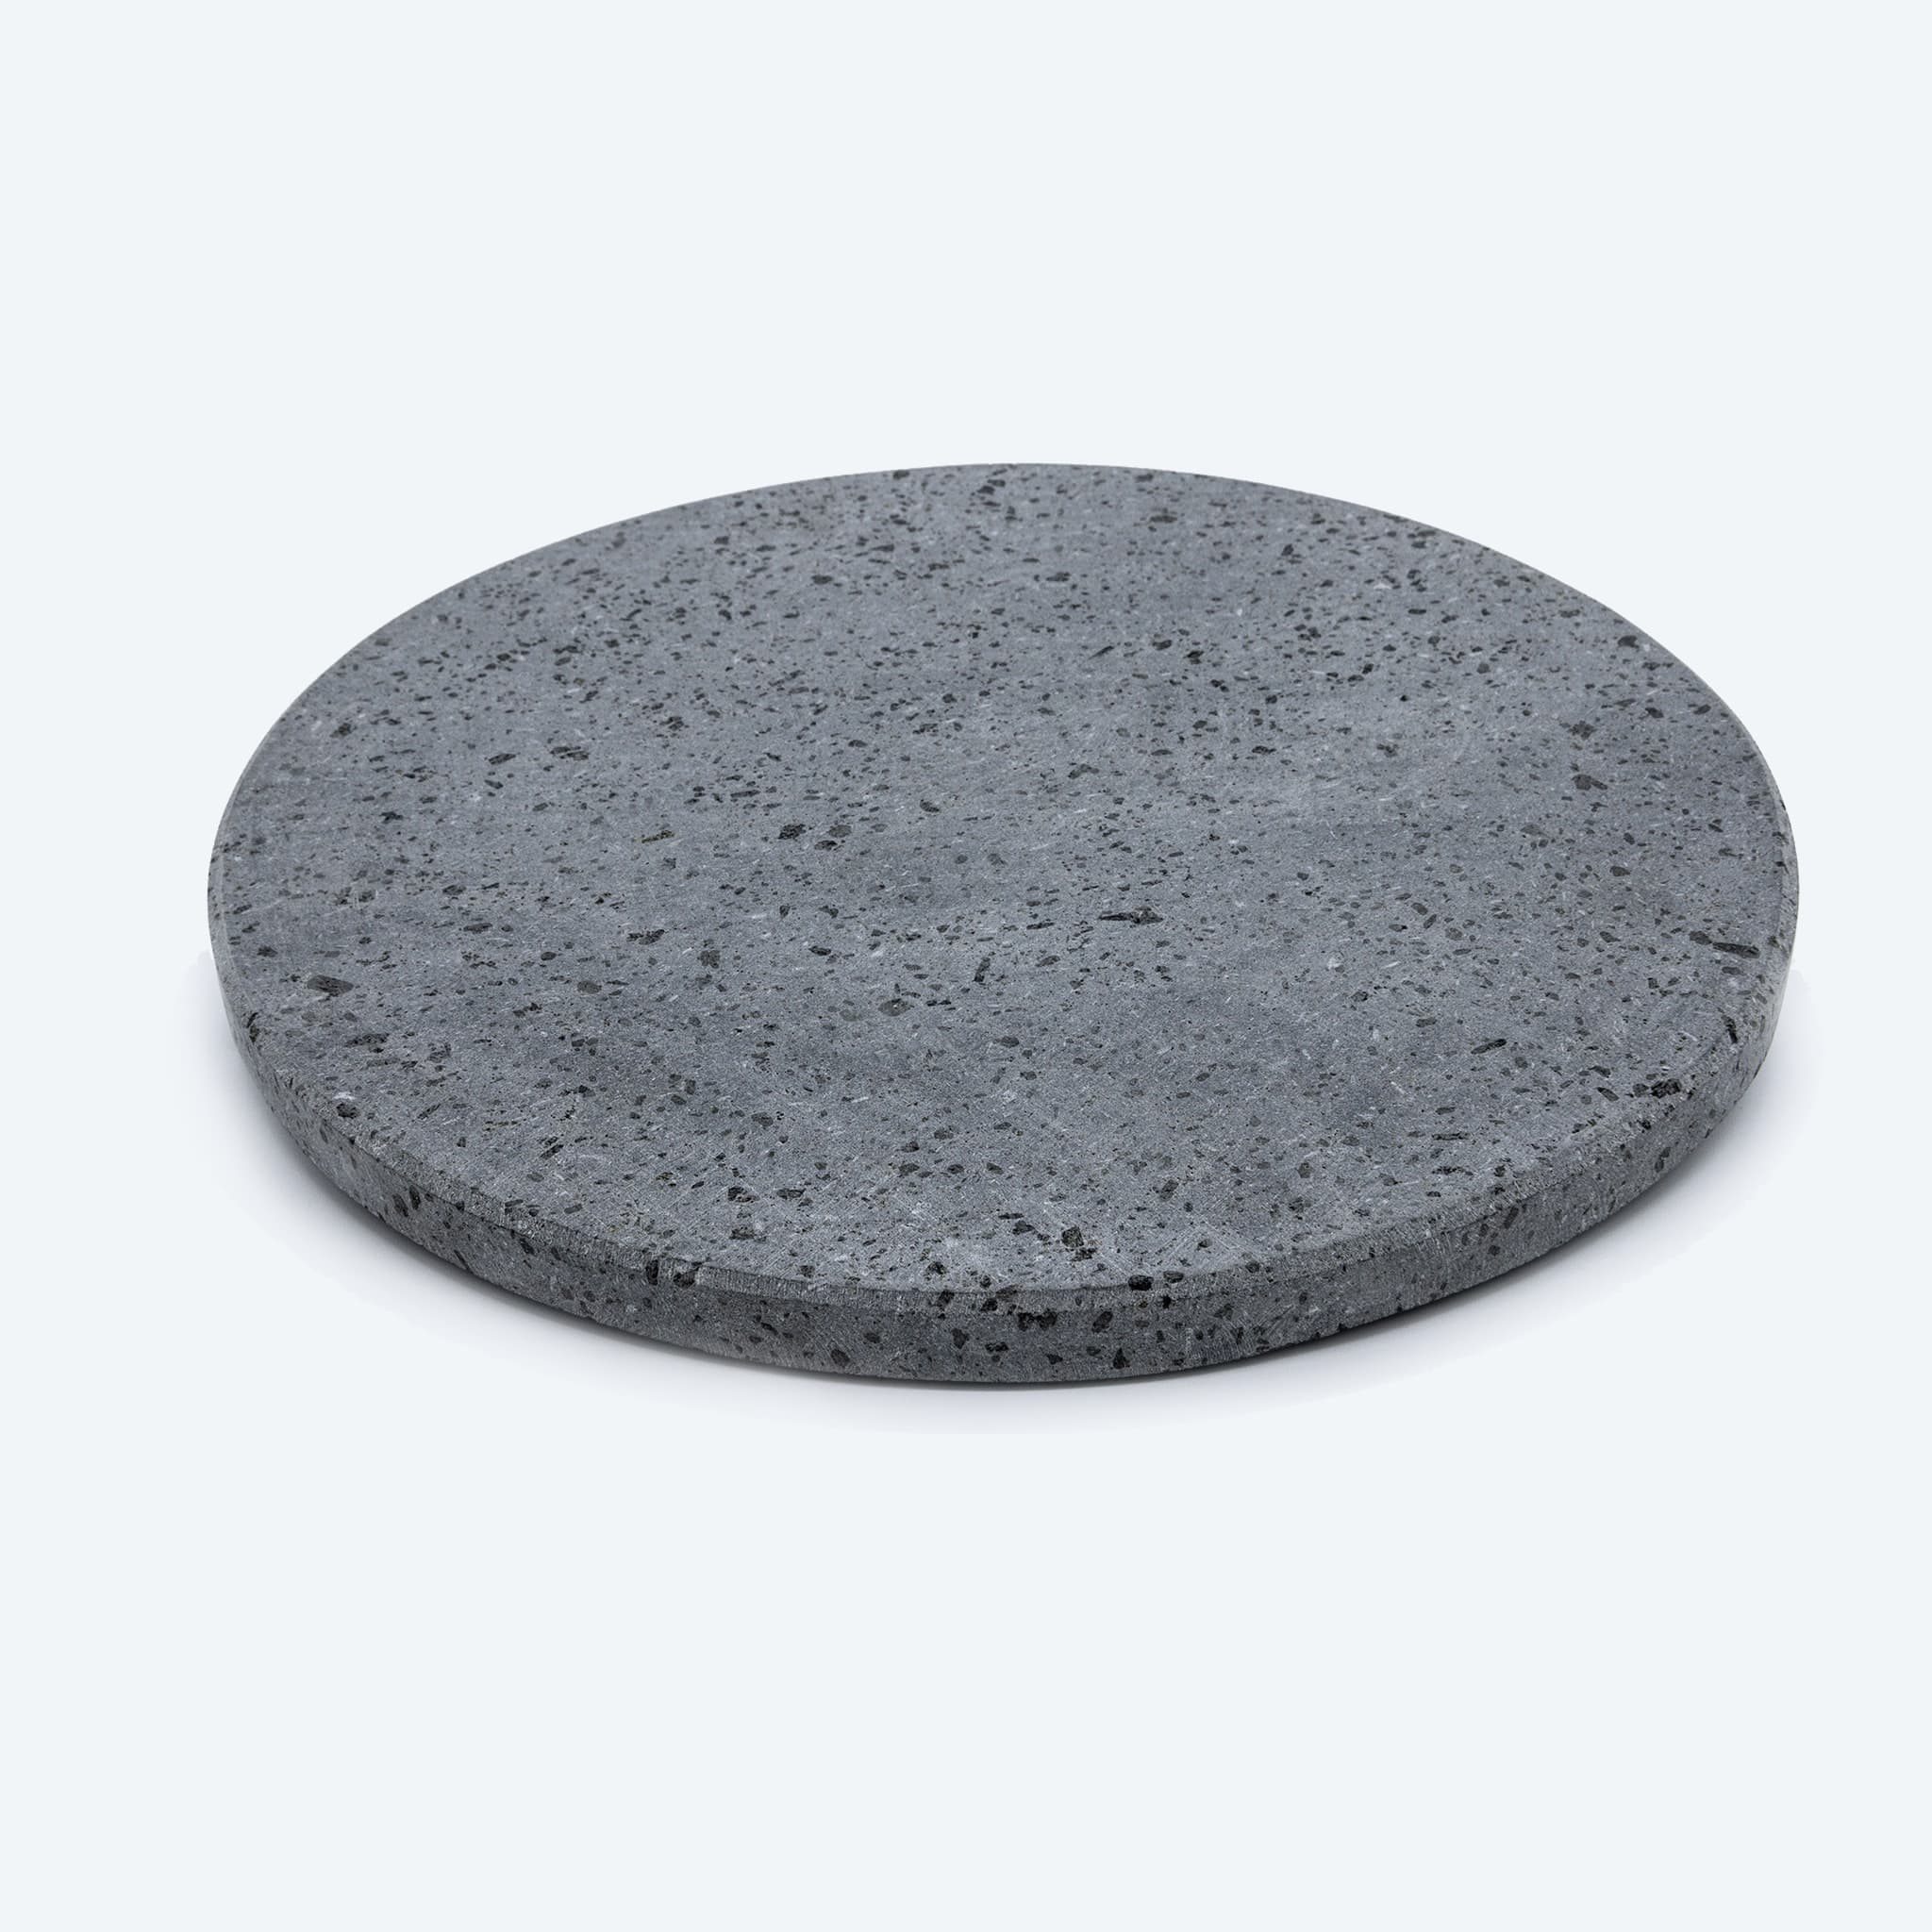 Feuerfeste Lavasteinplatte für runde Pizzen (Durchmesser 35 cm – Dicke 2 cm)